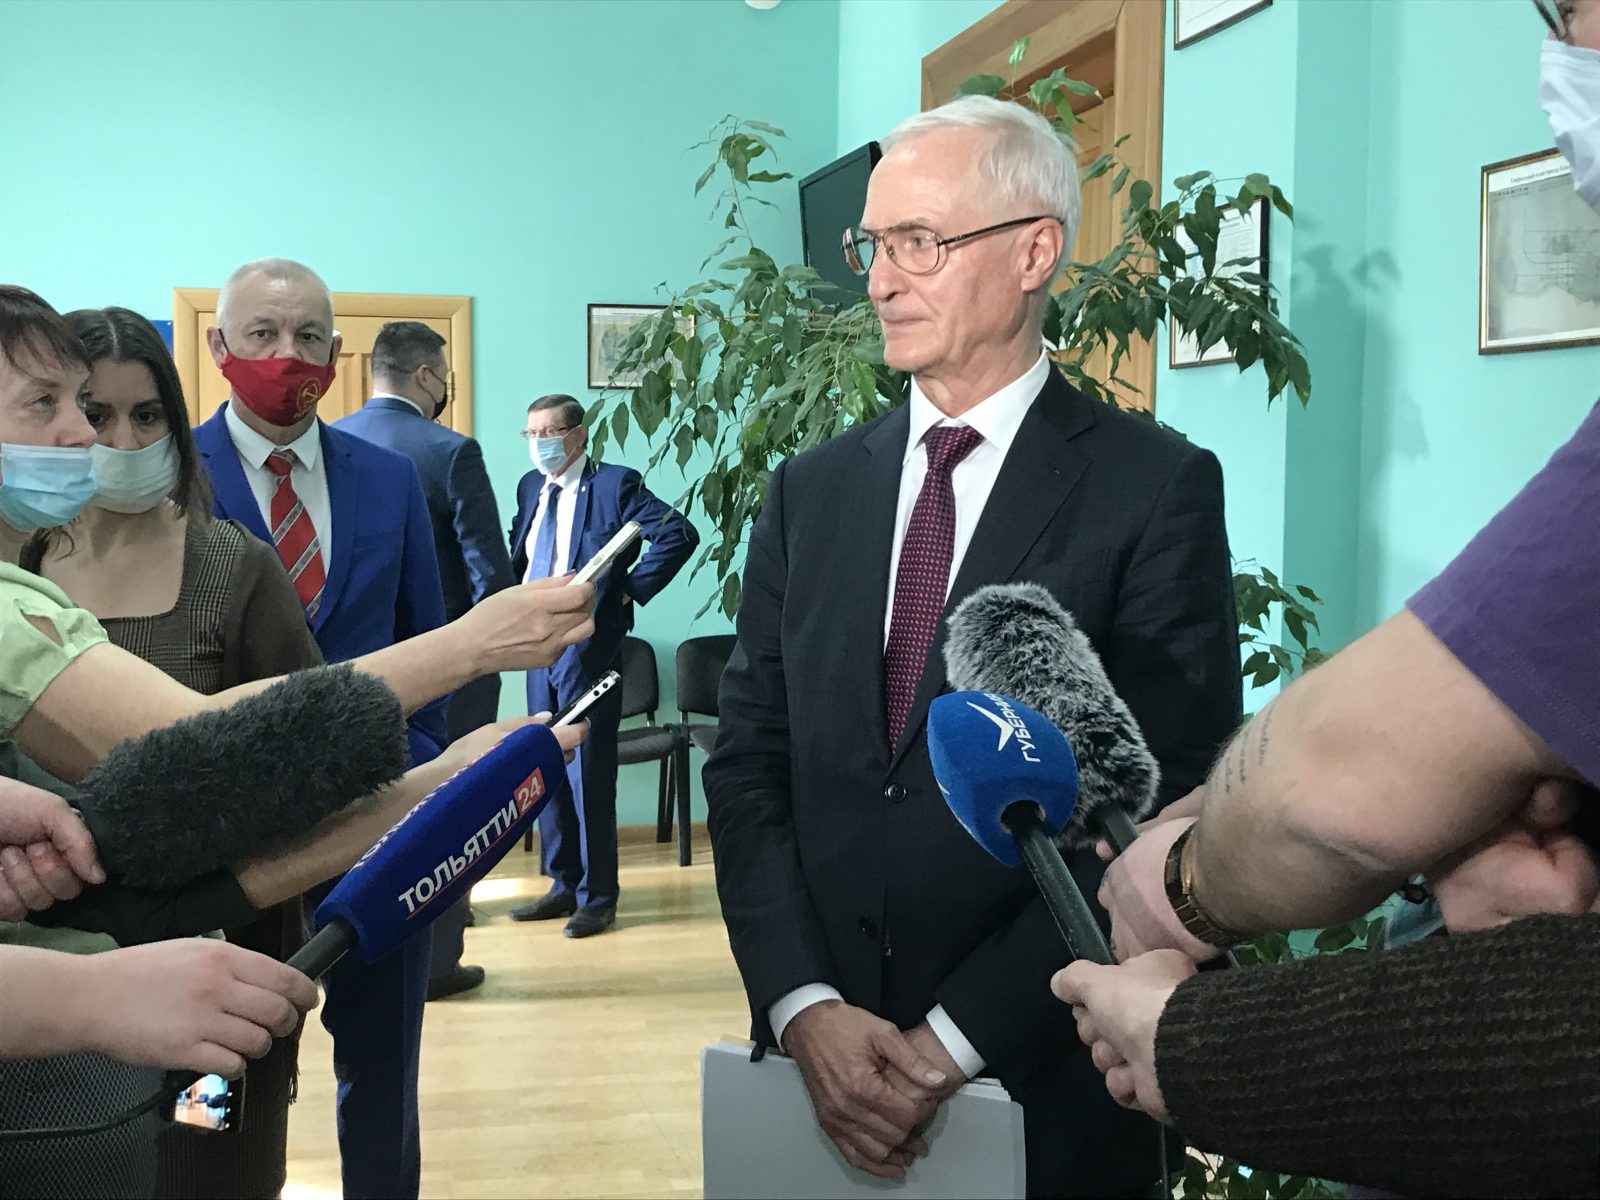 Главврач COVID-госпиталя стал новым мэром Тольятти